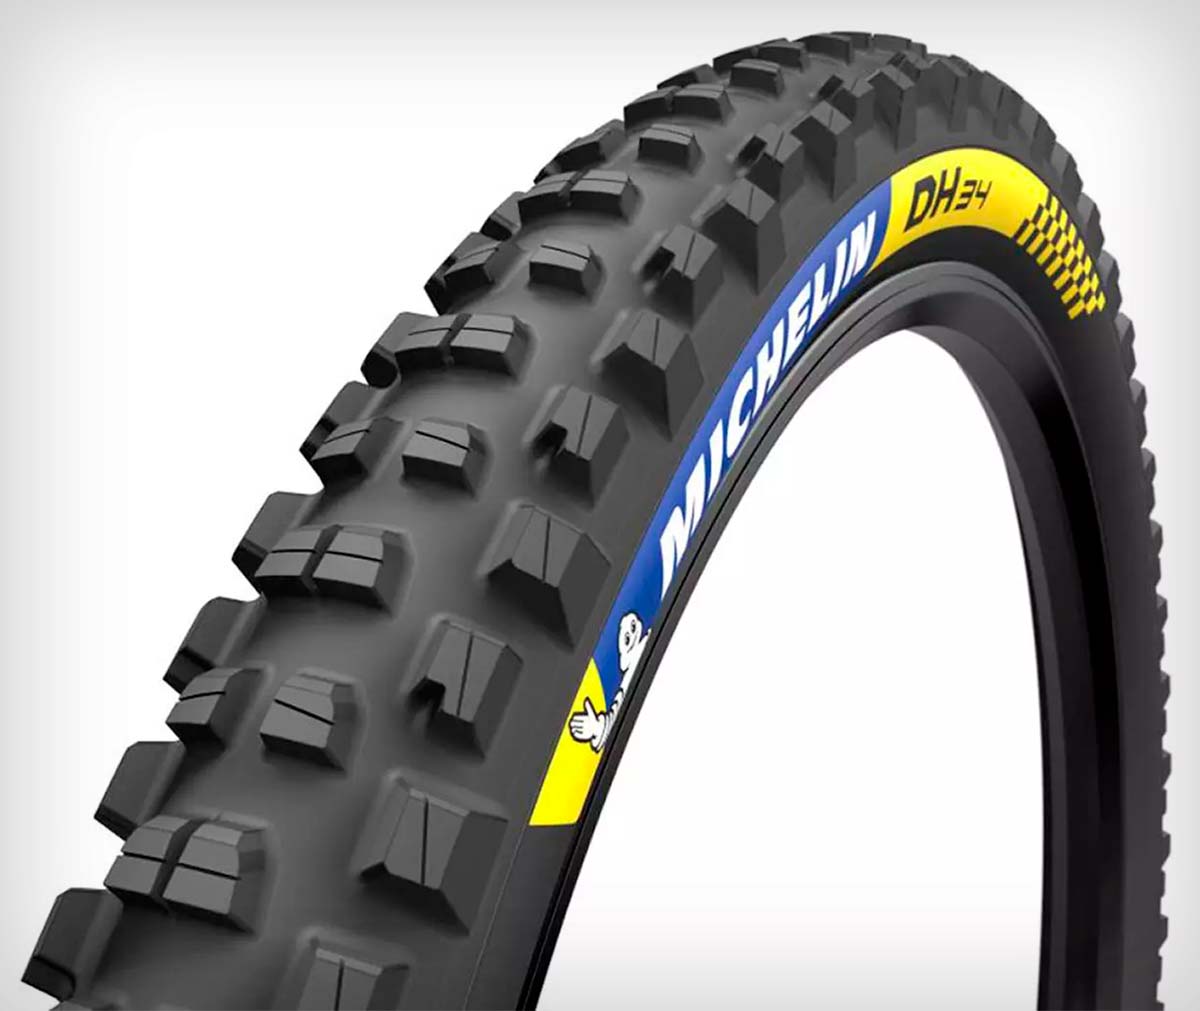 En TodoMountainBike: Michelin presenta su gama de neumáticos de Descenso DH 22, DH 34 y DH Mud